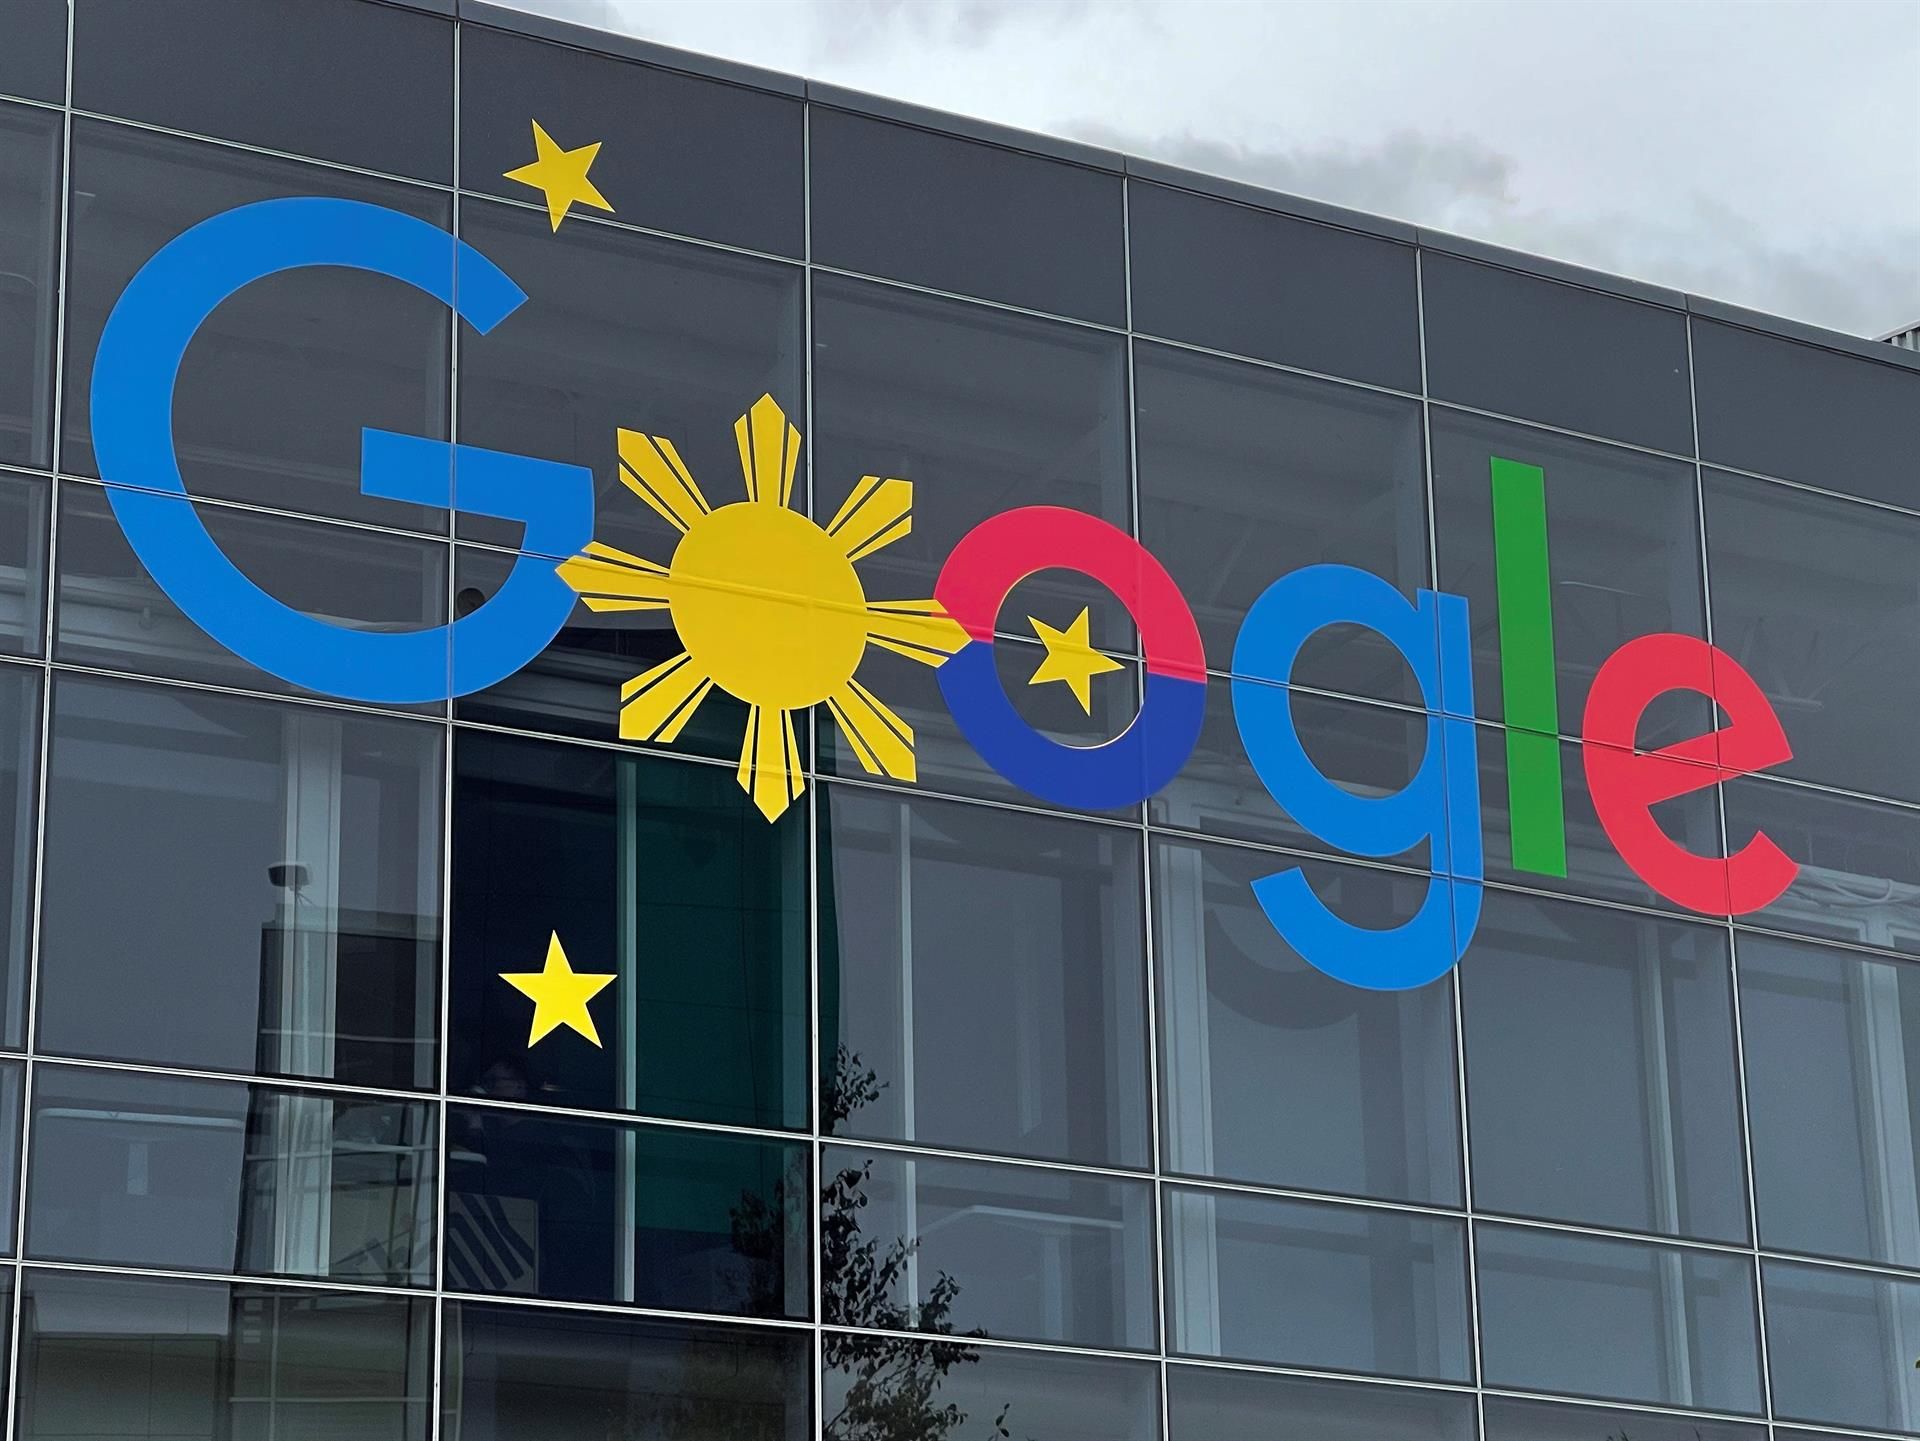 Imagen de archivo de la fachada de la sede de Google, conocida como Googleplex, en Mountain View, California (EE.UU). EFE/EPA/JOHN G. MABANGLO